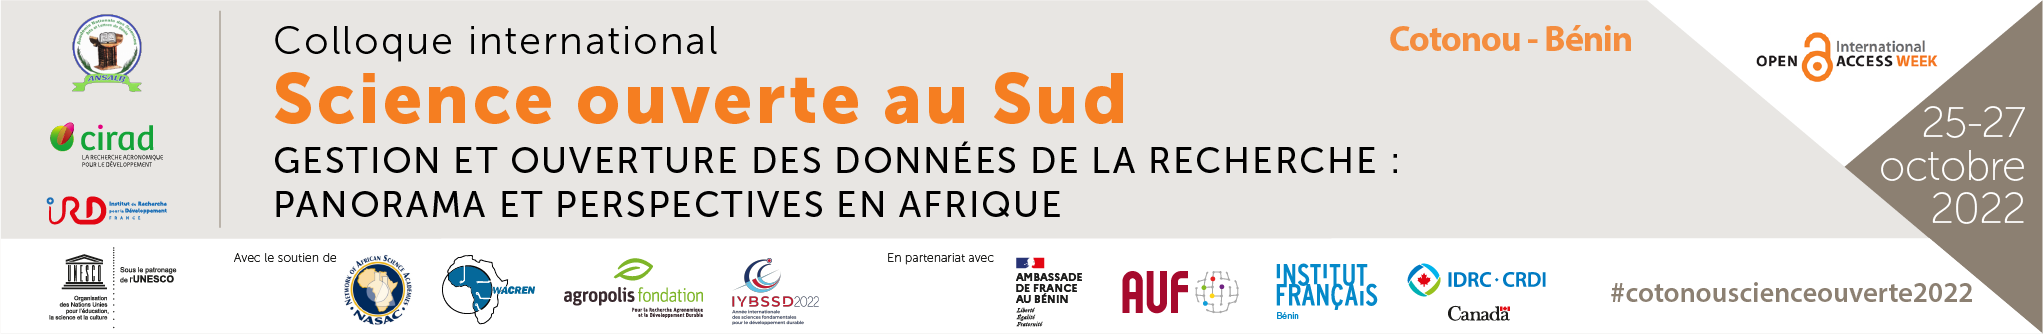 Cotonou accueille le colloque international Science ouverte au Sud du 25 au 27 octobre 2022